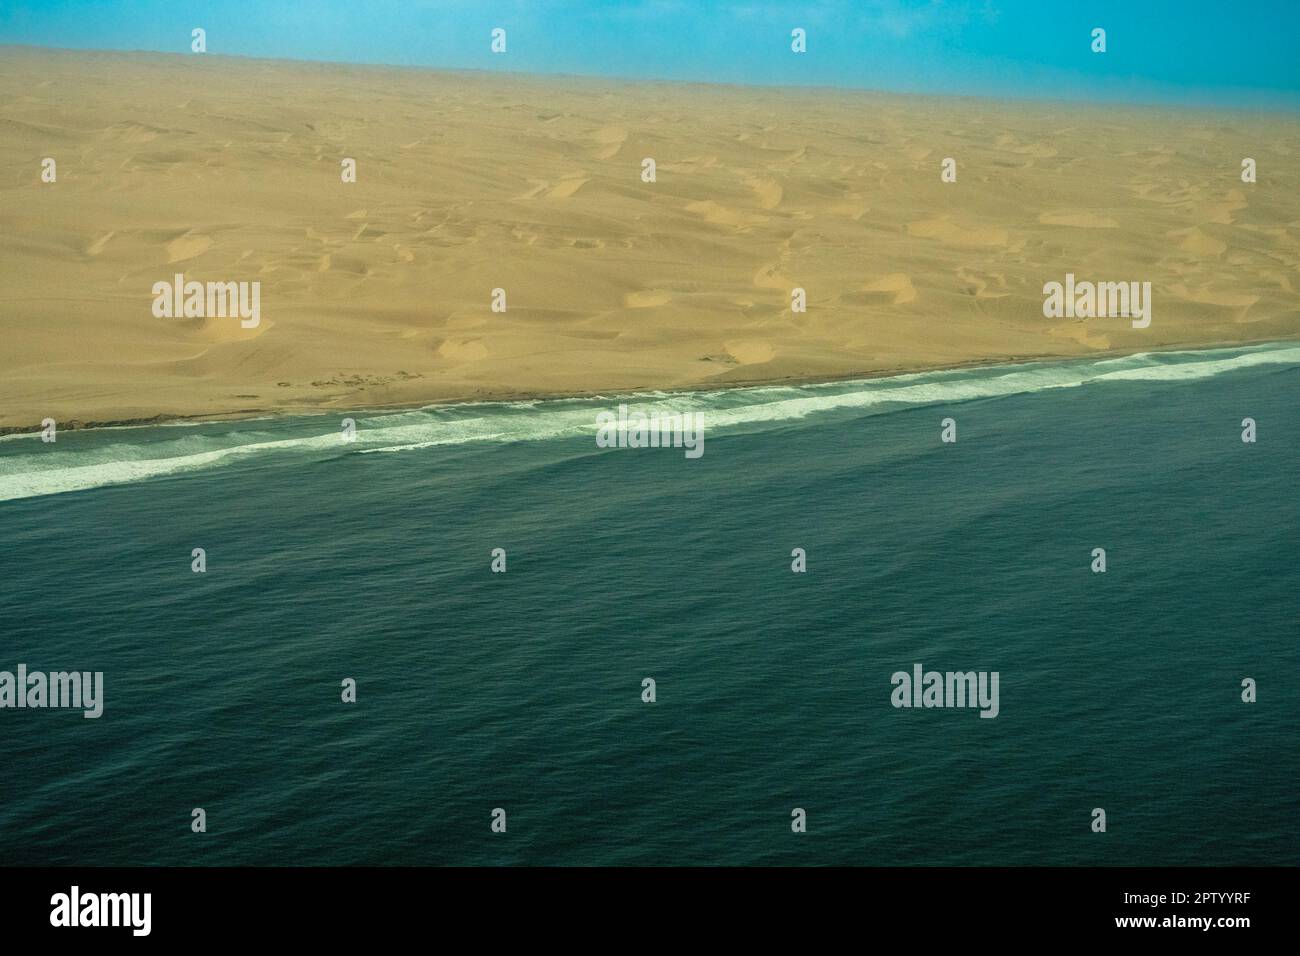 Vol de photographie aérienne au-dessus des dunes qui rencontrent l'océan Atlantique Namibie Banque D'Images